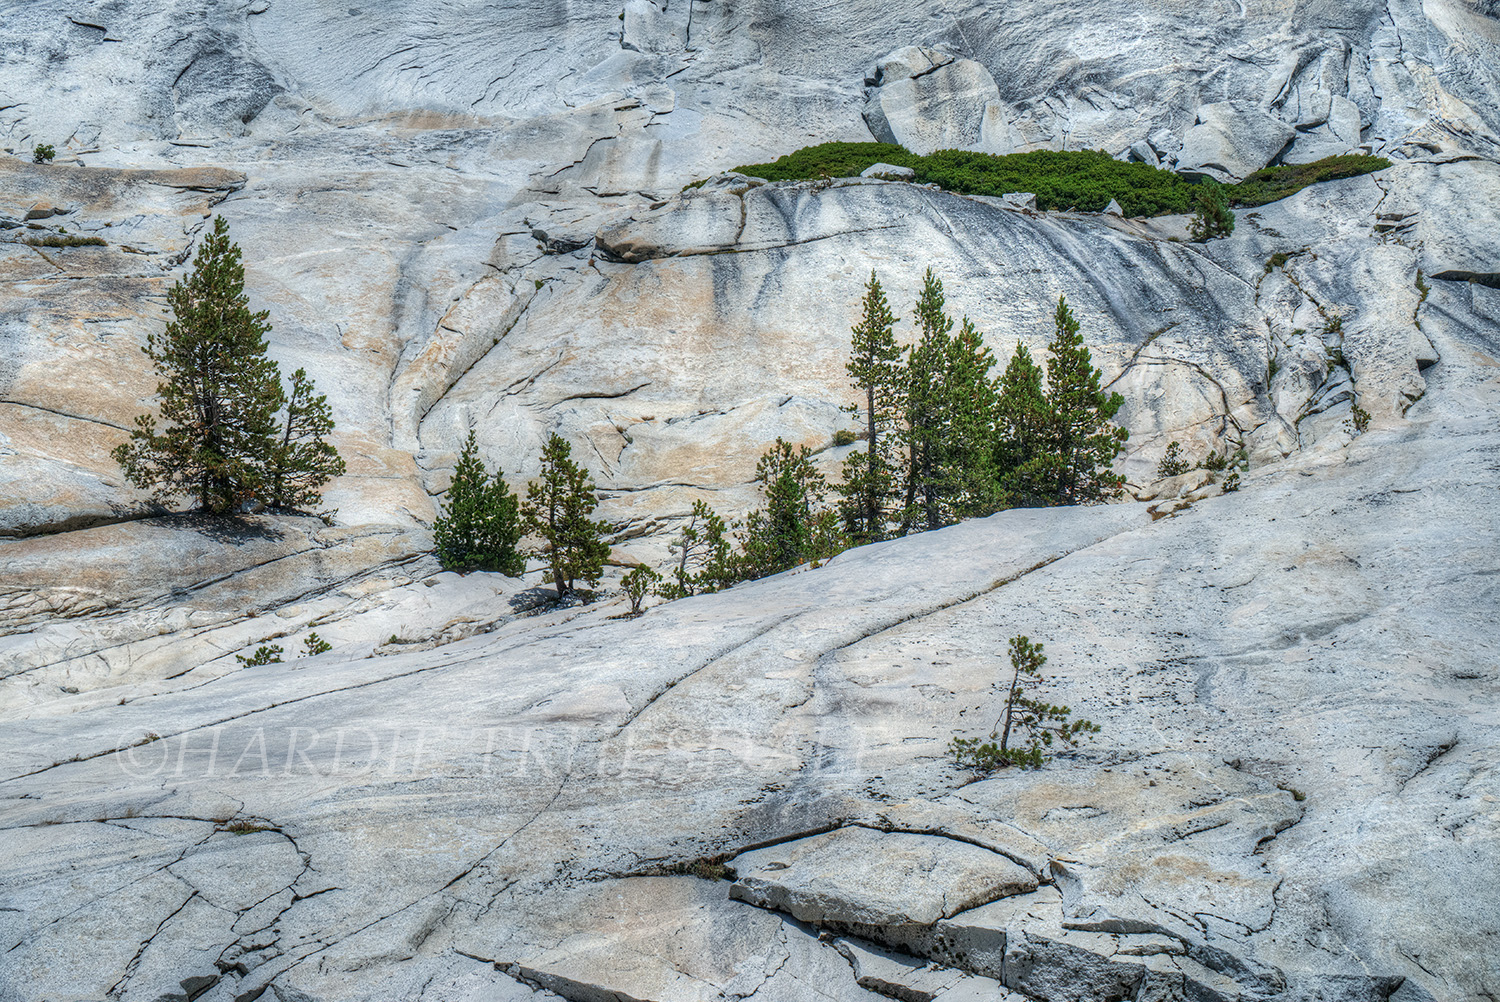 CA#166 "Granite Environs, Yosemite"